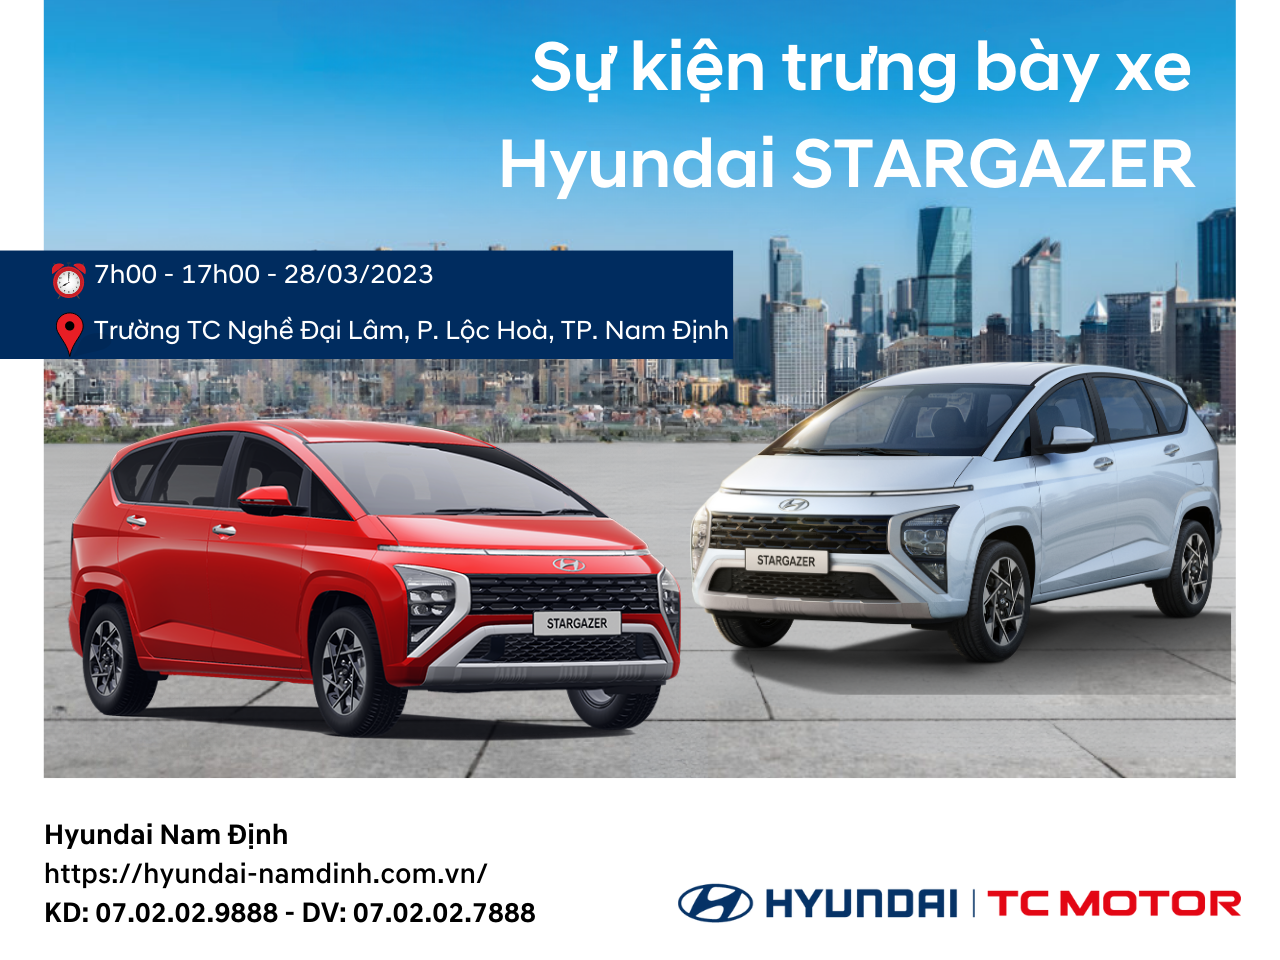  Sự kiện trưng bày xe Hyundai STARGAZER